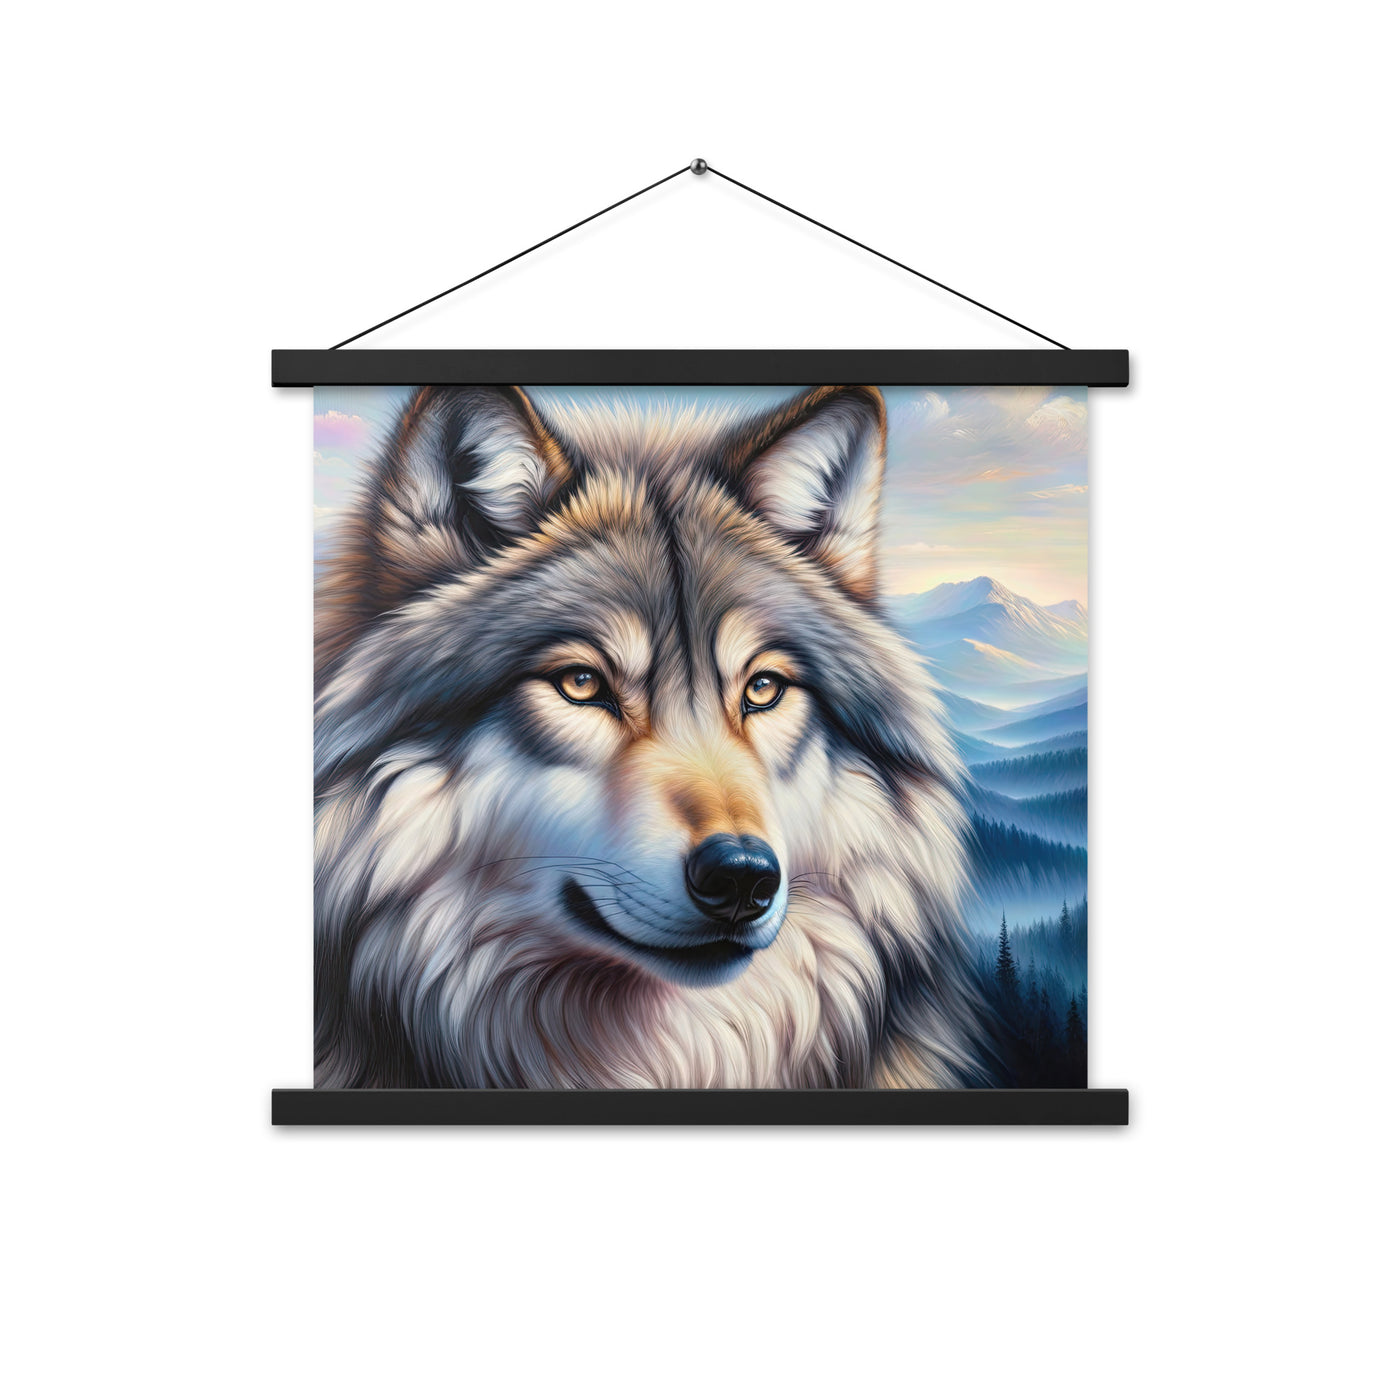 Ölgemäldeporträt eines majestätischen Wolfes mit intensiven Augen in der Berglandschaft (AN) - Premium Poster mit Aufhängung xxx yyy zzz 45.7 x 45.7 cm